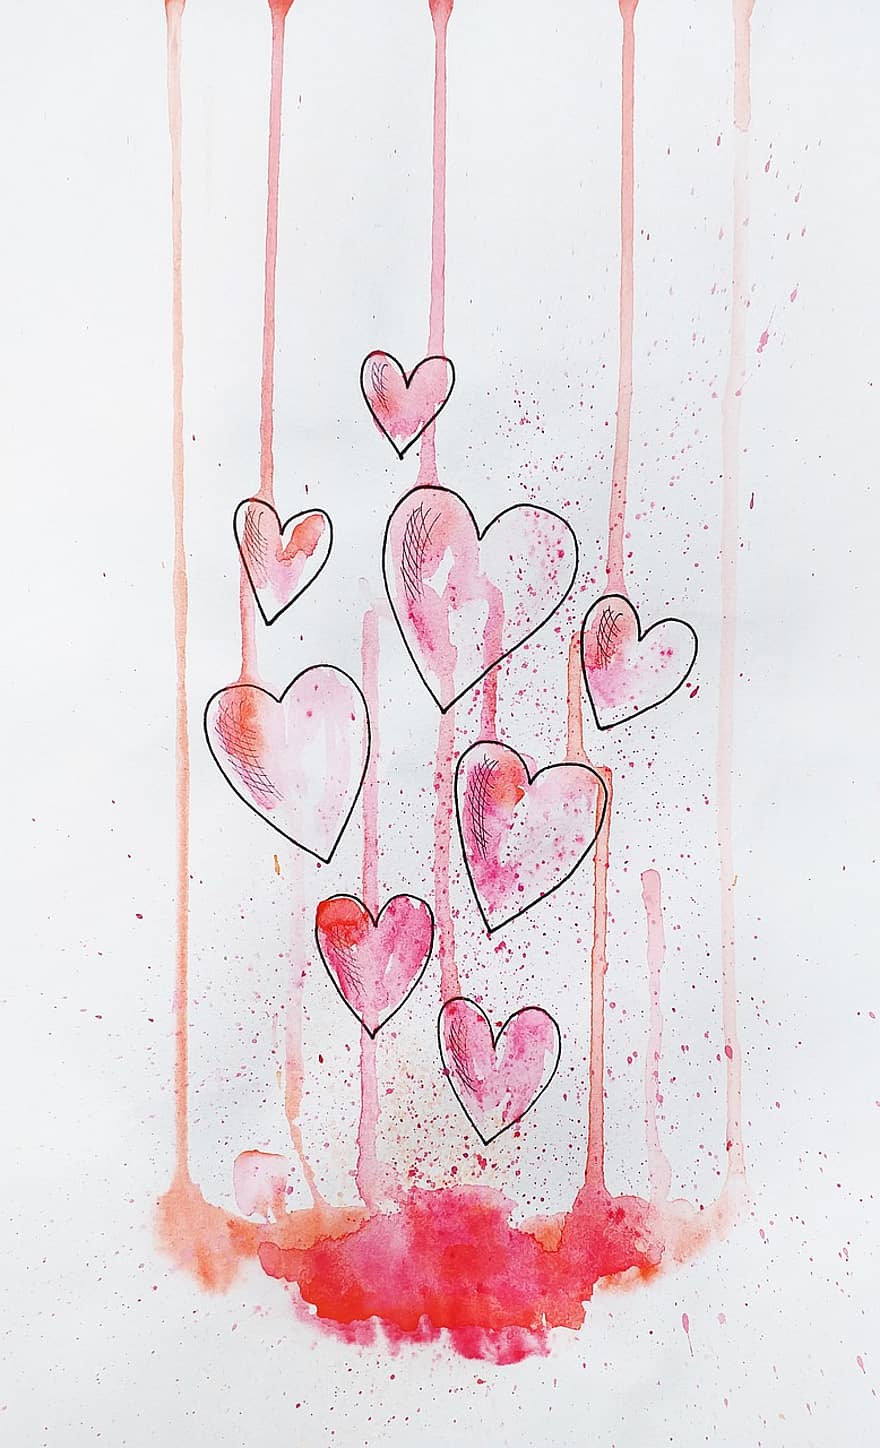 szeretet, szívek, vízfestmény, érzések, Valentin nap, Művészet, vázlat, Kézzel készített grafika, érzékenység, szív, kapcsolat